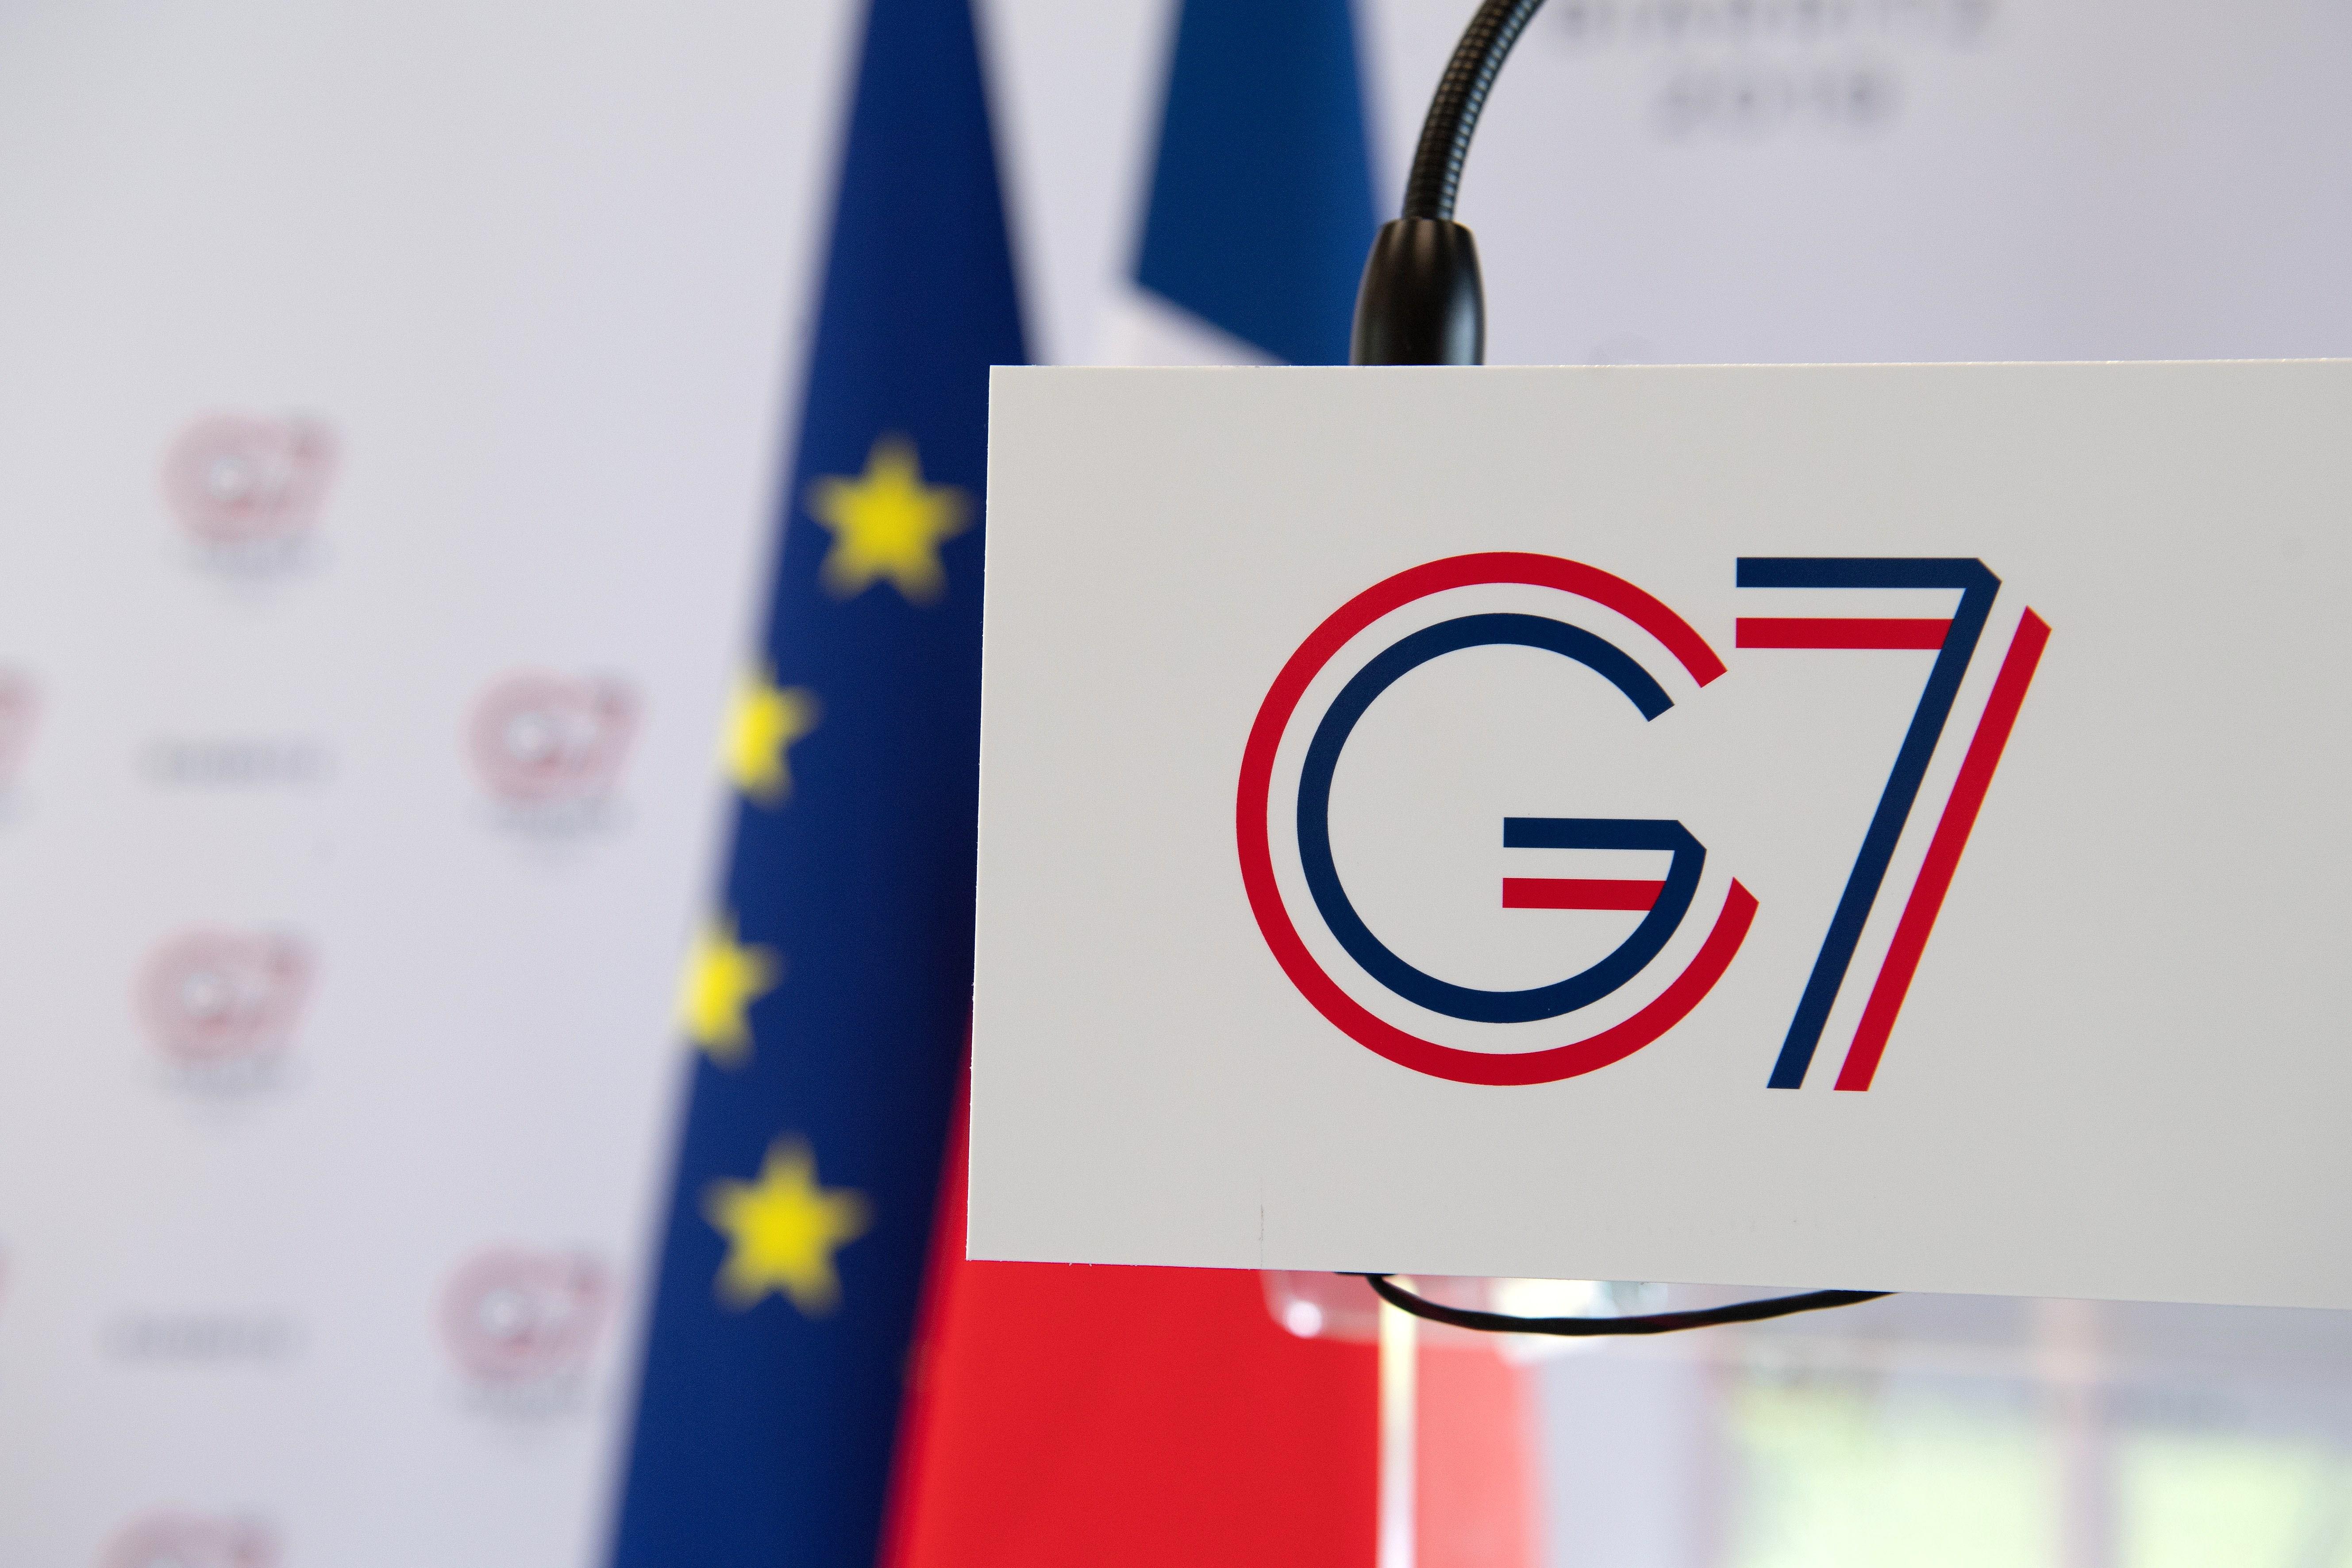 L'inici de la cimera del G7 a Biarritz deixa, de moment, 17 detinguts i 4 policies ferits